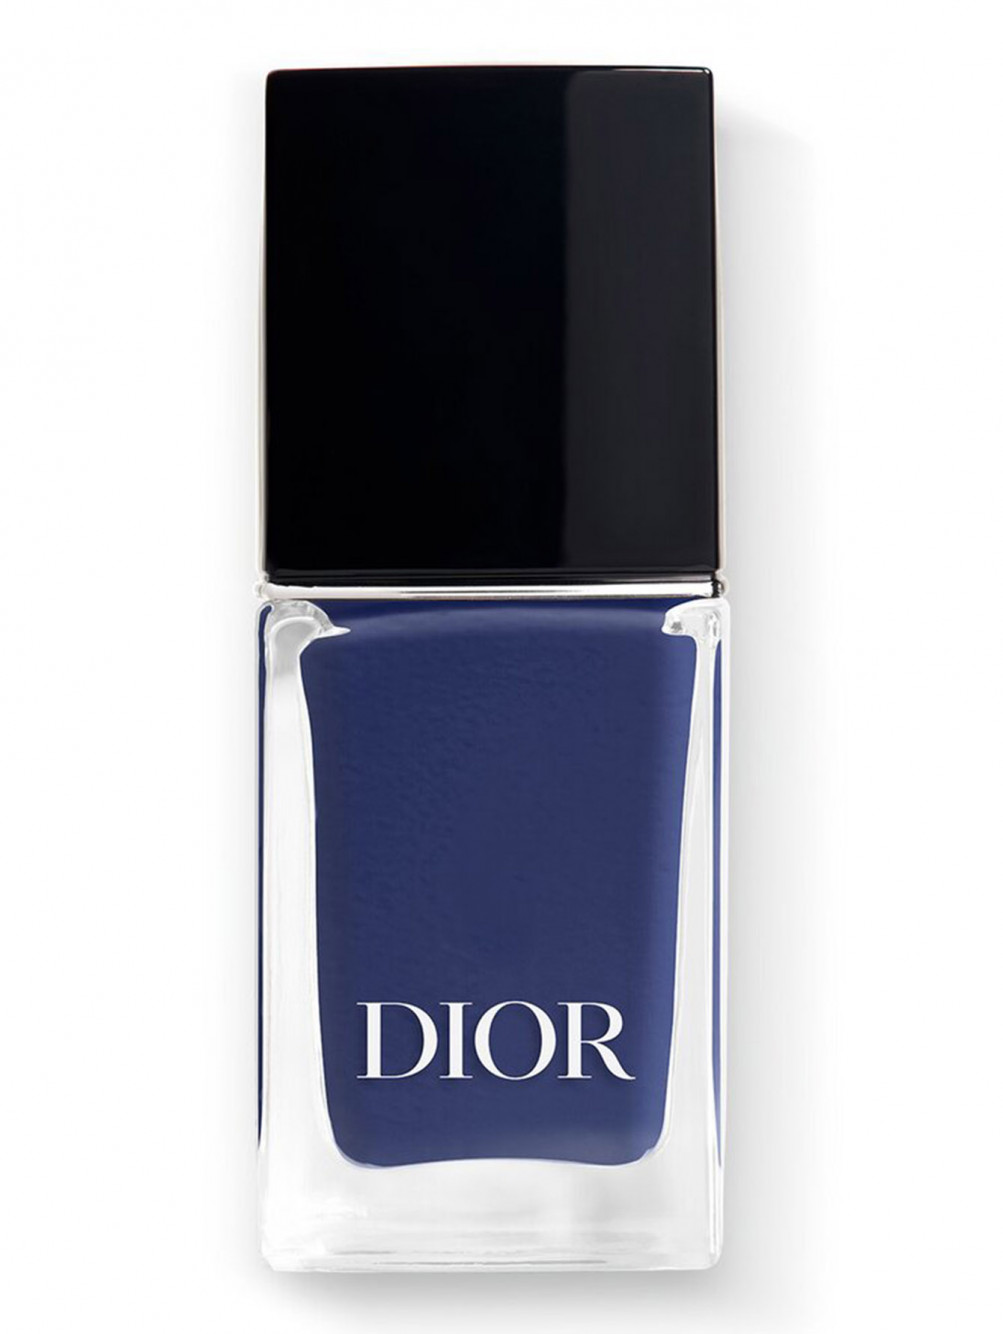 Лак для ногтей с эффектом гелевого покрытия Dior Vernis, 796 Деним, 10 мл - Общий вид